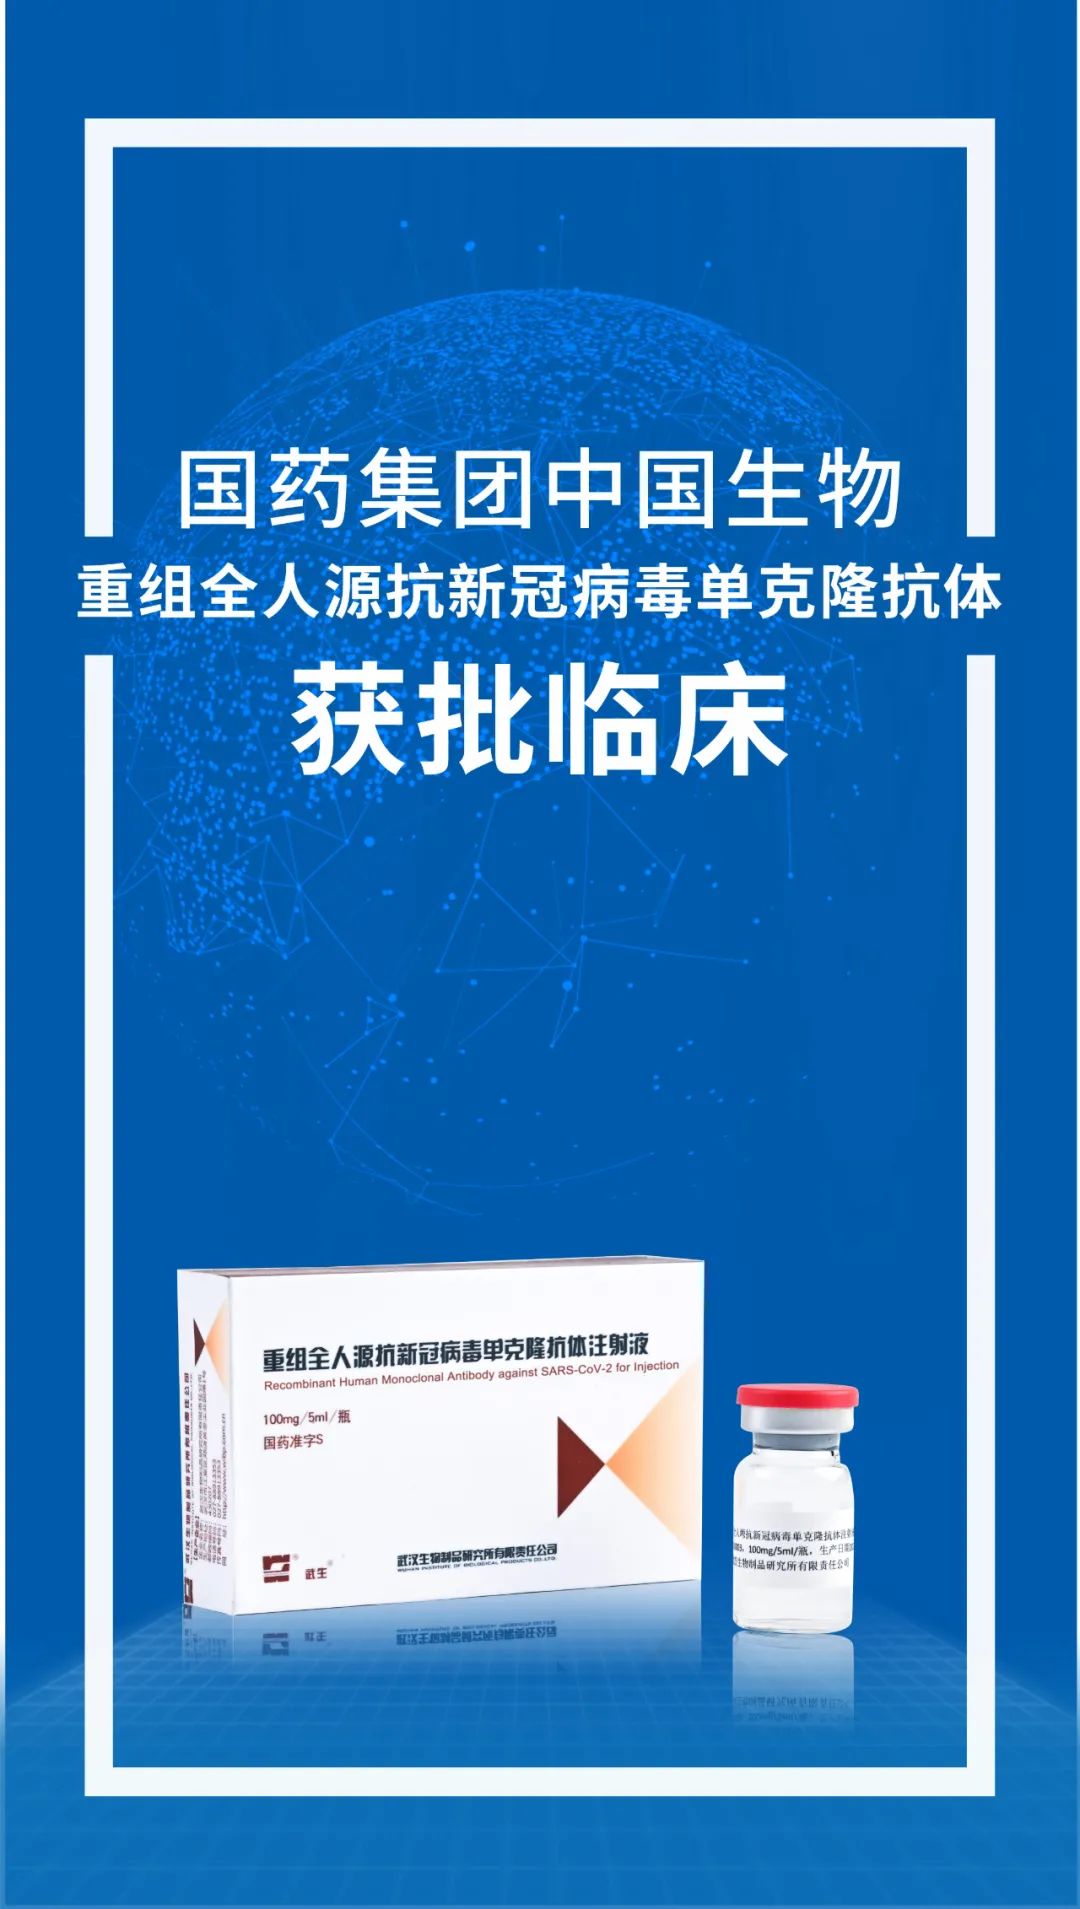 中国生物武汉生物制品研究所新冠单克隆抗体获得临床试验批件